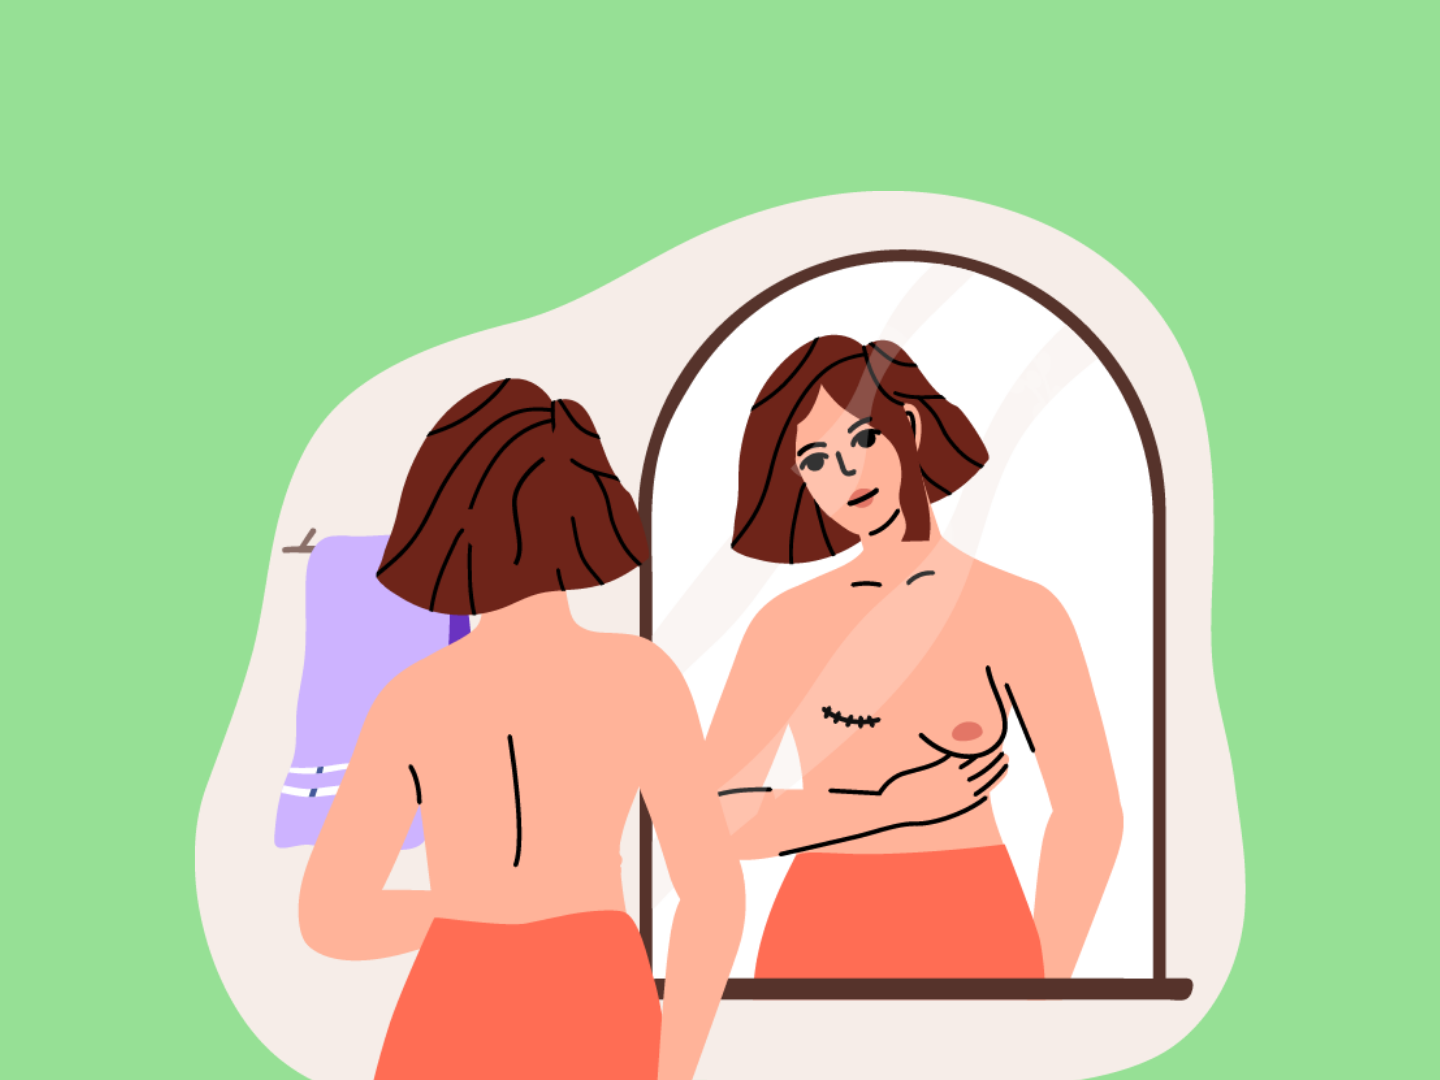 Conocer Su Normalidad: La Guía De Breasties Para La Concientización Sobre El Cáncer De Mama y Ginecológico